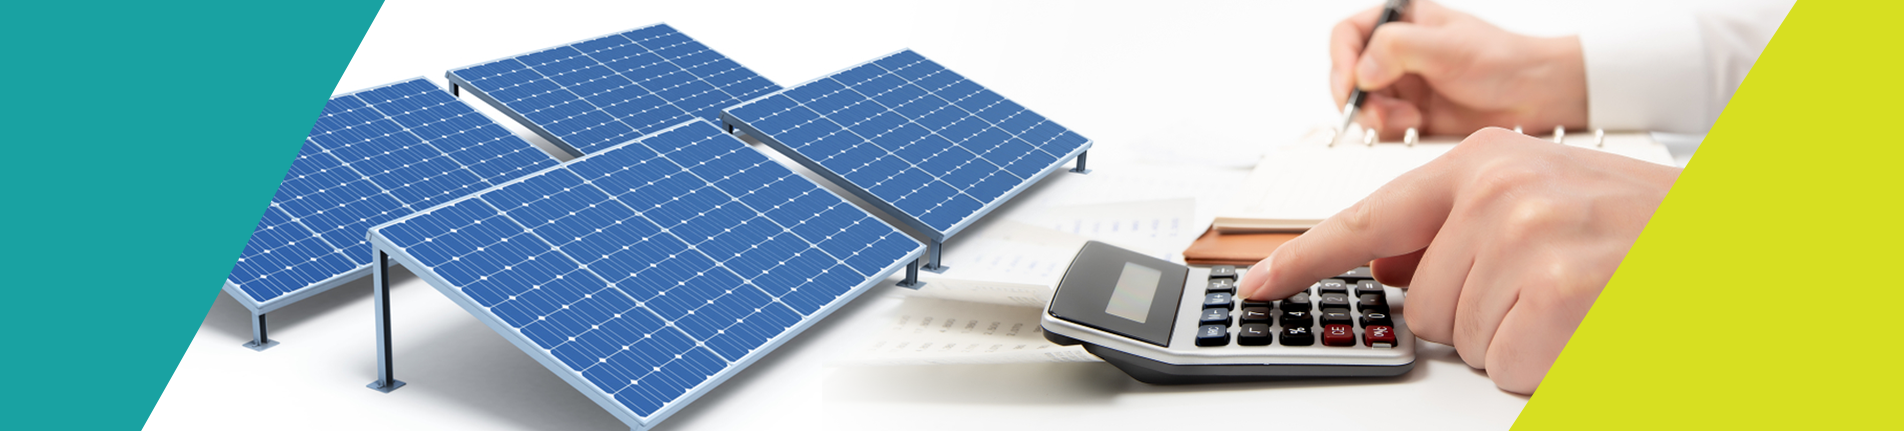 Como saber se a energia solar é viável financeiramente?